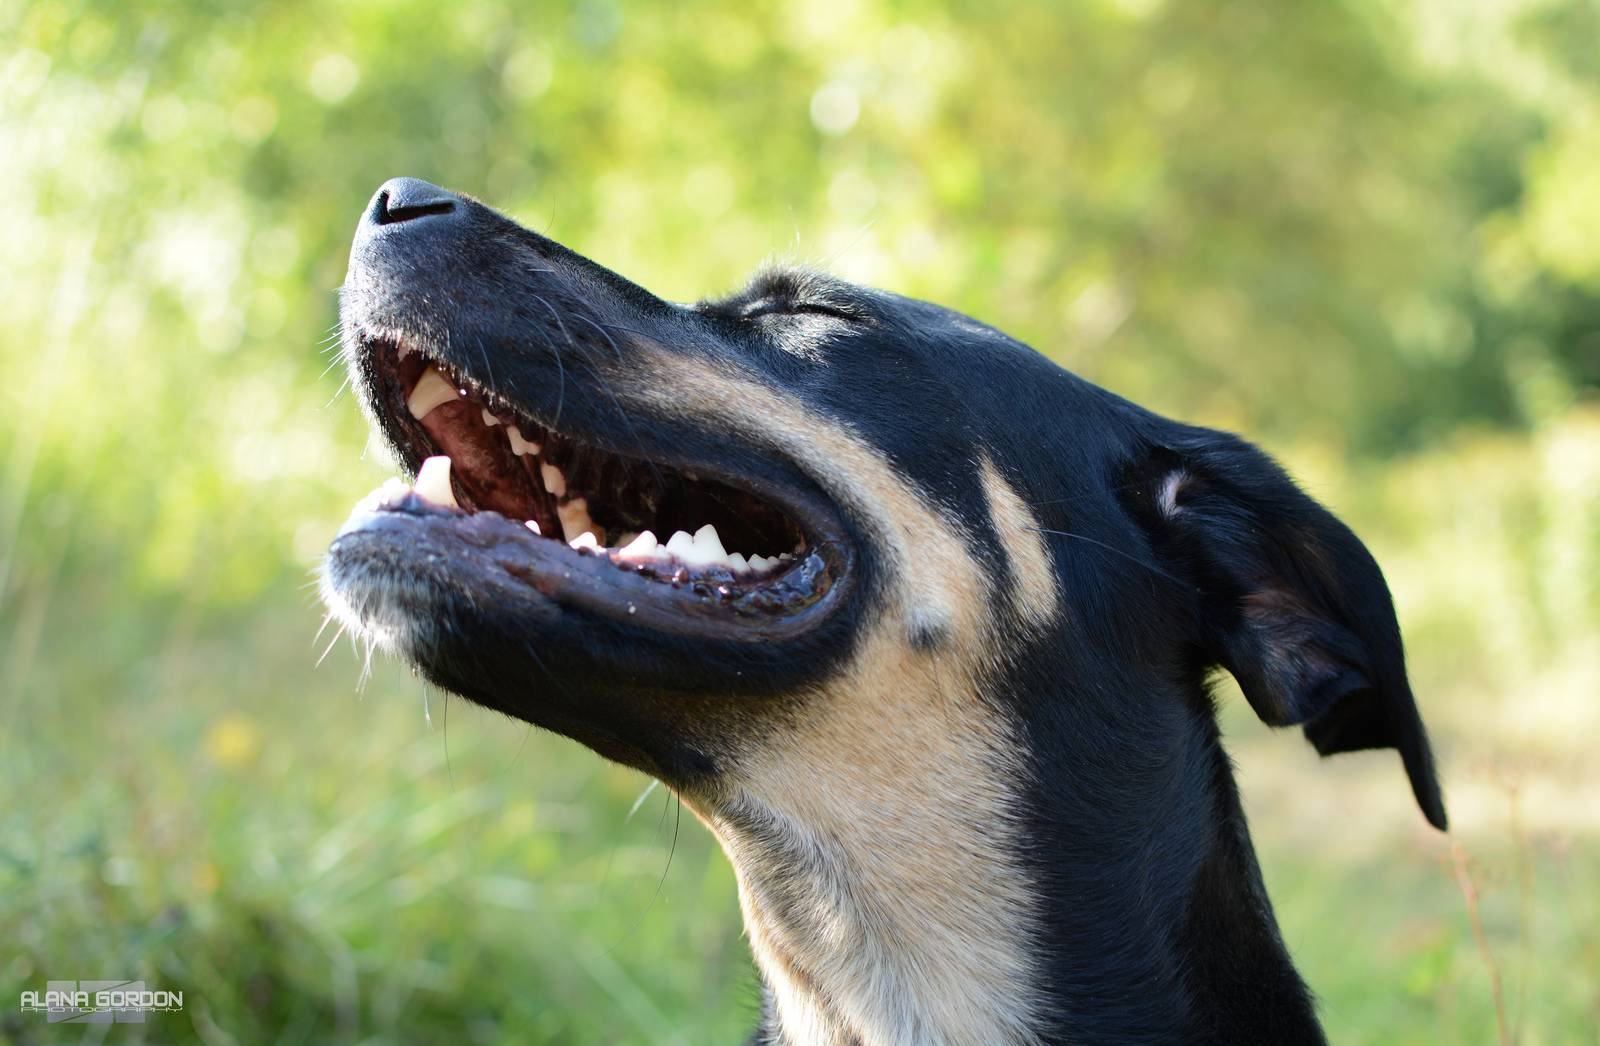 Умеют ли собаки и кошки смеяться | gafki.ru | яндекс дзен